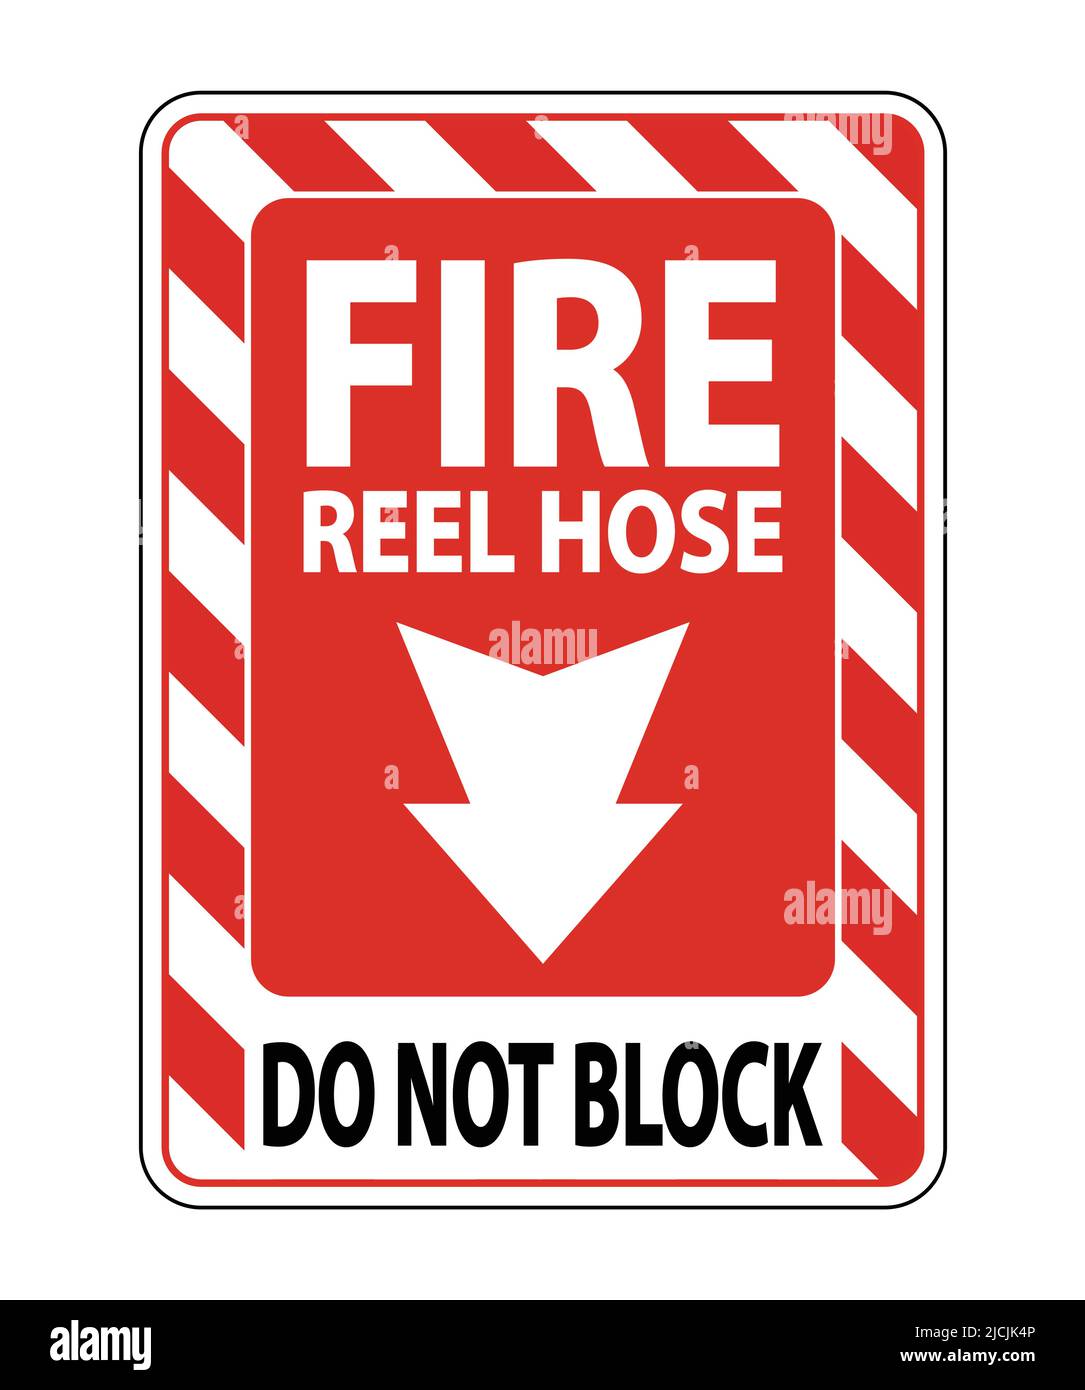 https://c8.alamy.com/comp/2JCJK4P/fire-reel-hose-do-not-block-sign-on-white-backgroundvector-illustration-2JCJK4P.jpg